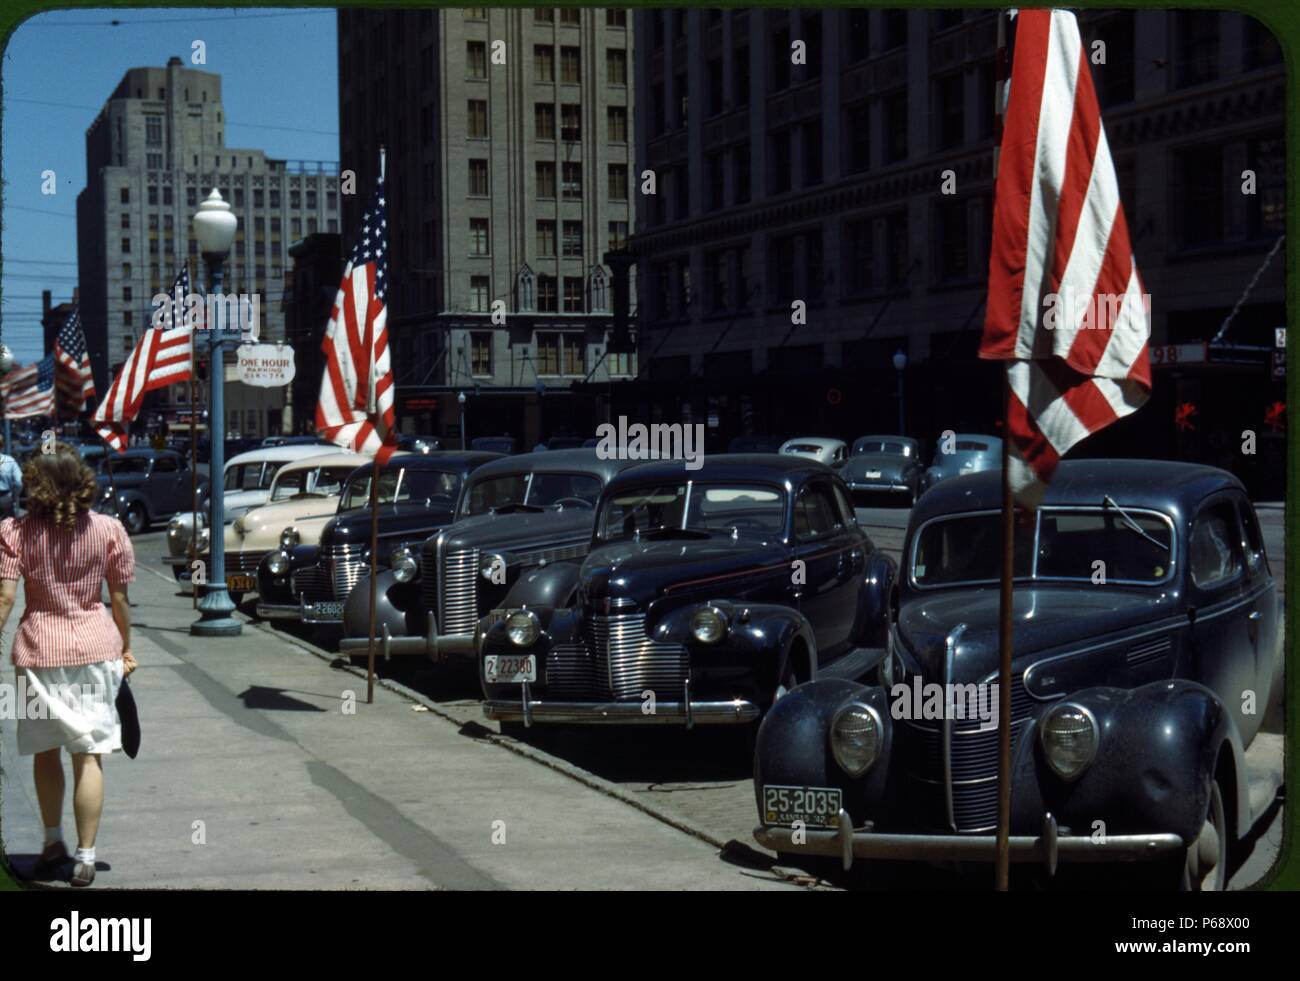 Dans la rue Lincoln, Nebraska, USA montrant une file de voitures garées en face de plusieurs drapeaux américains Banque D'Images